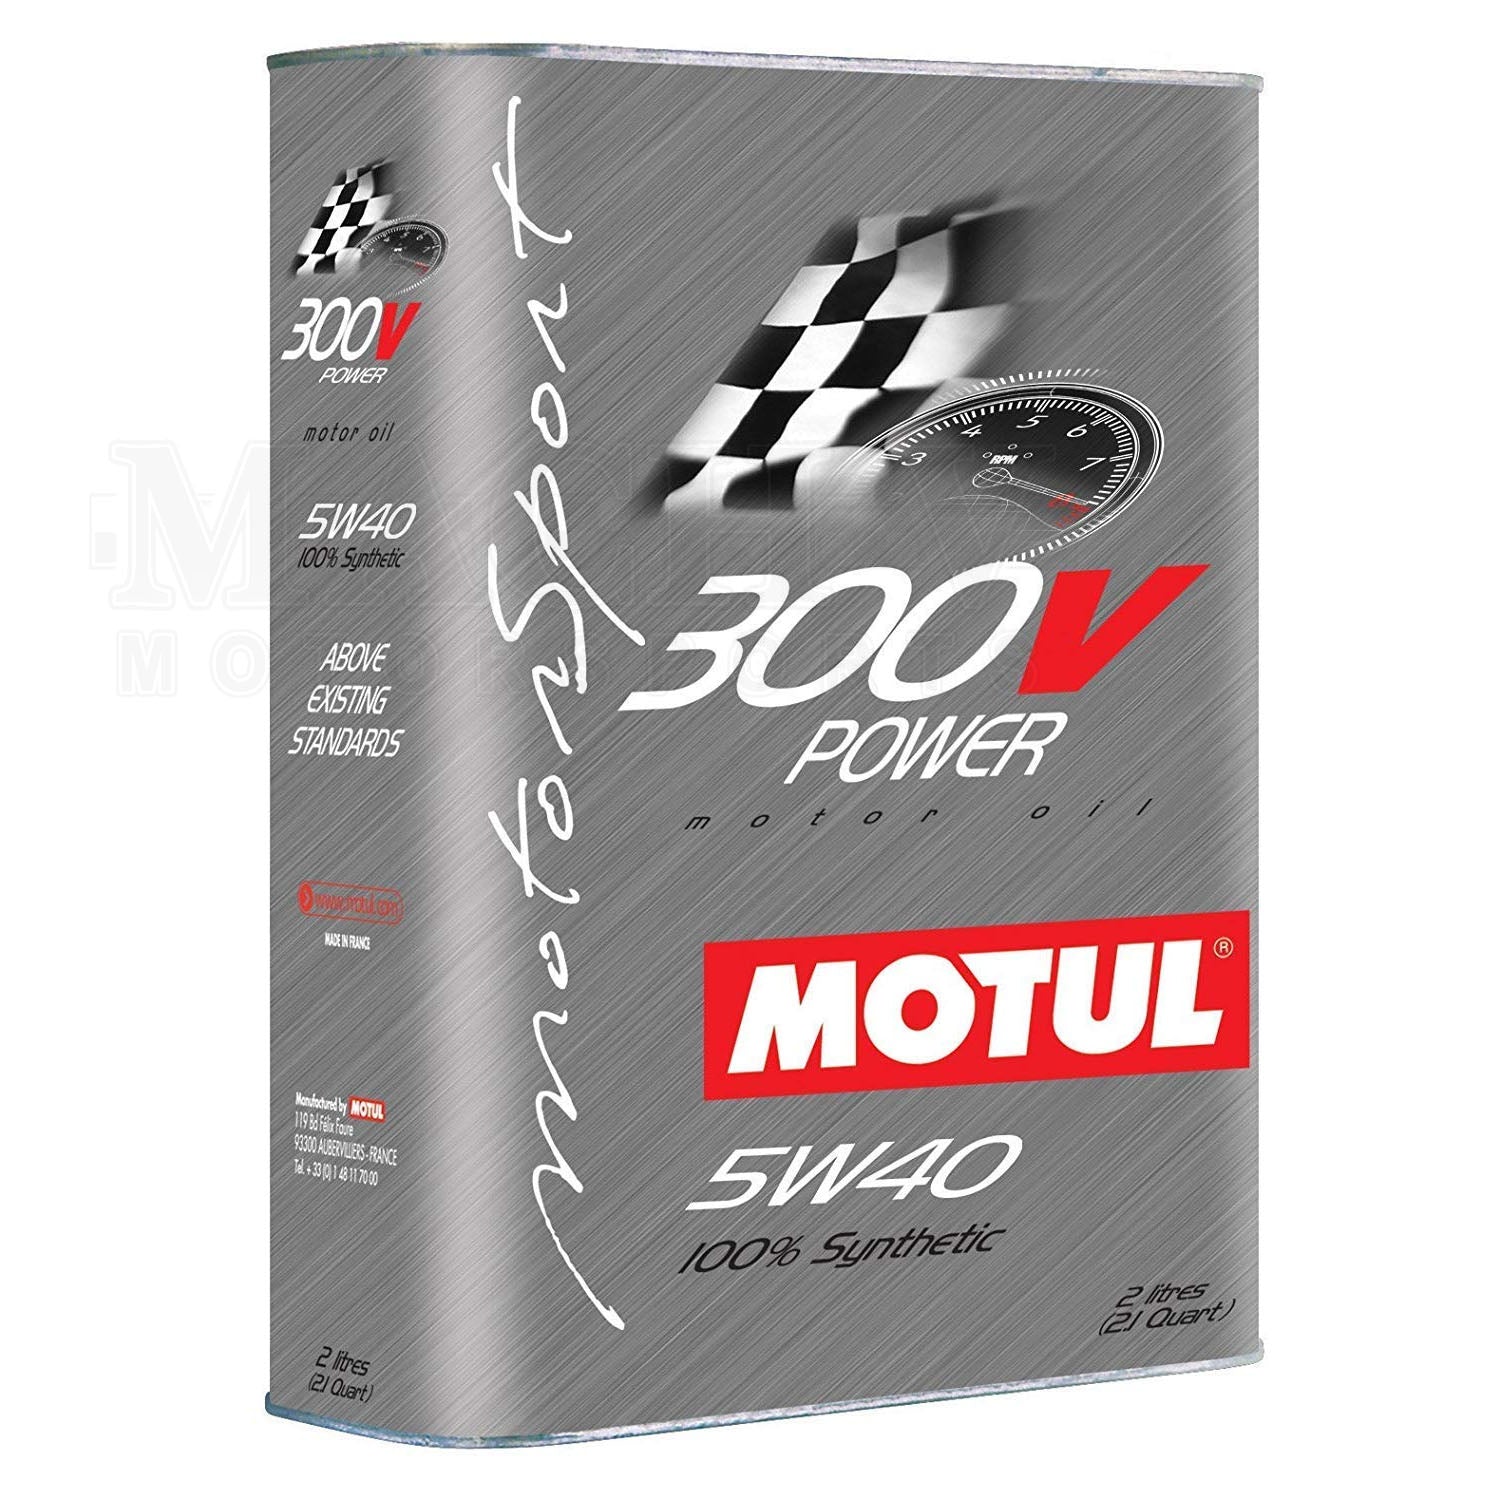 Motul 300V Power Competition Racing Motor Oil 5W40 - 2 Liter